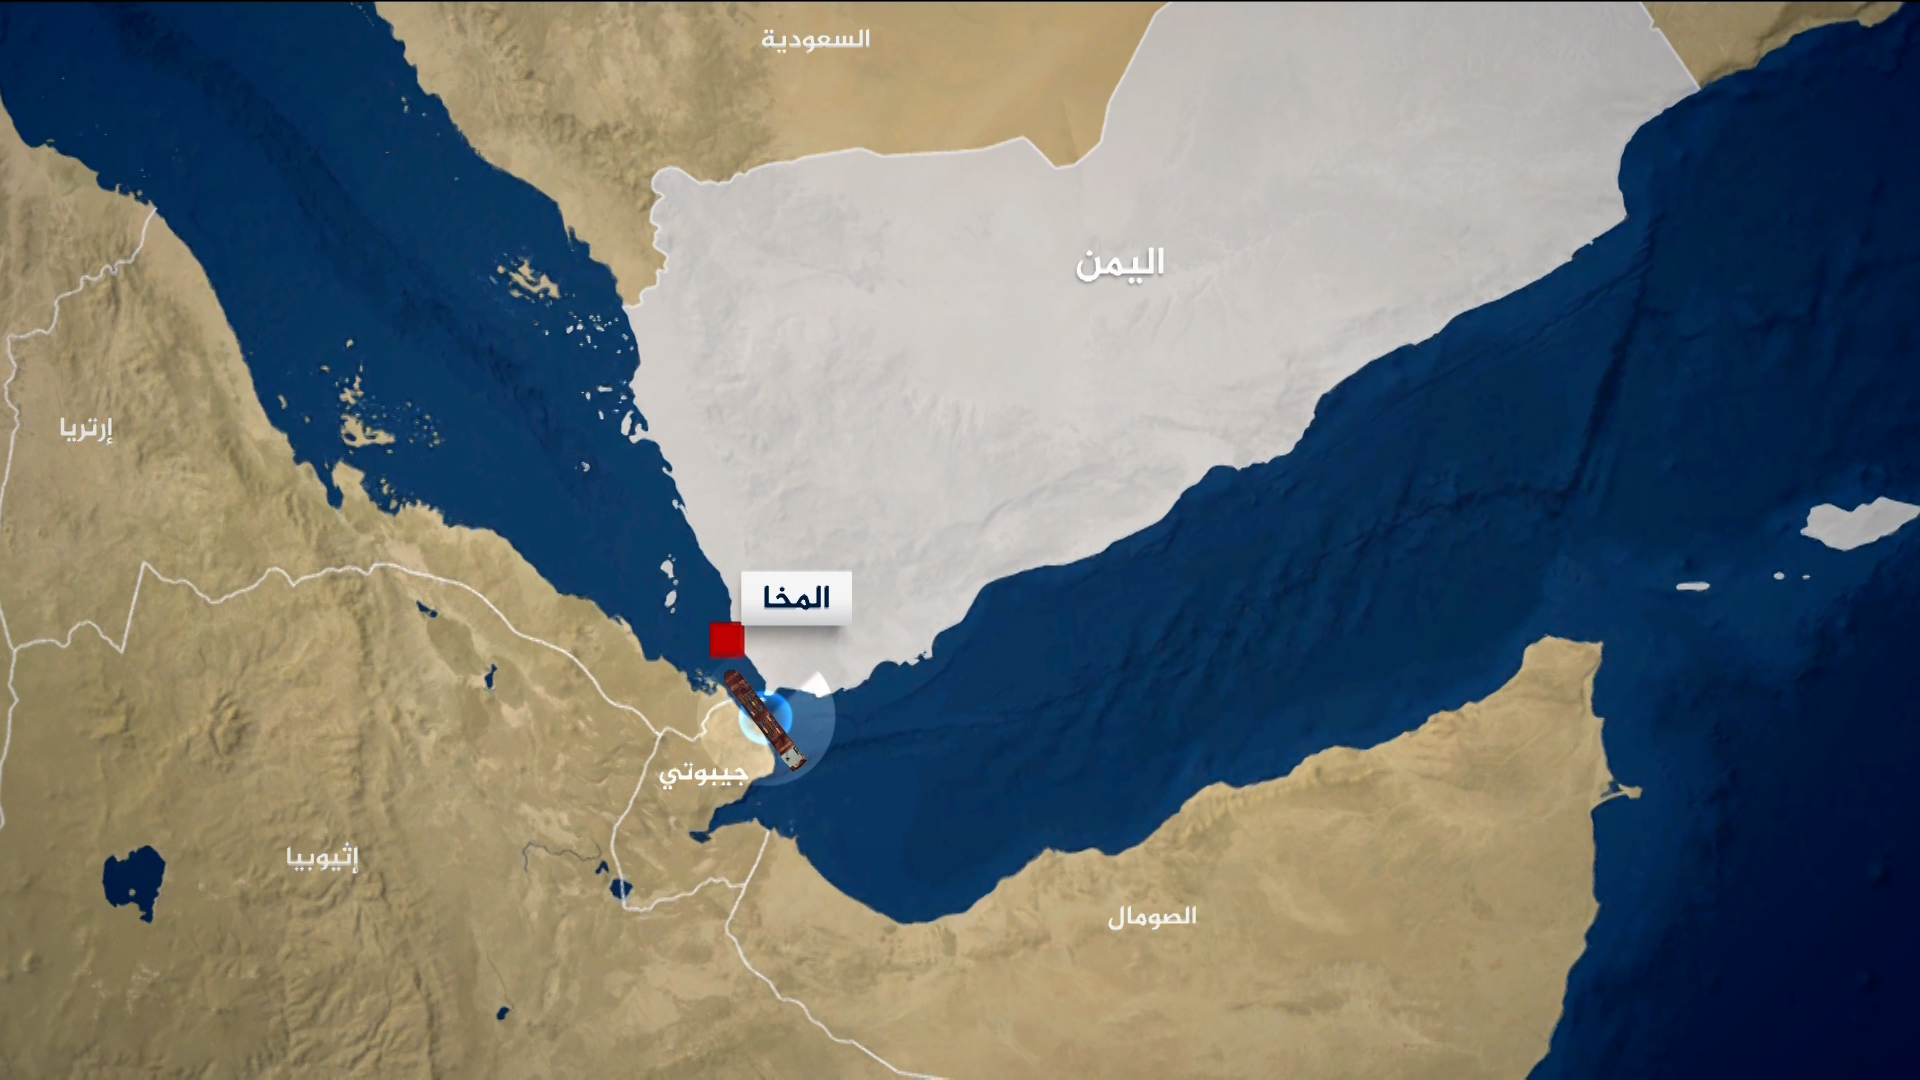 هجوم على سفينة بريطانية قبالة ساحل المخا غربي اليمن | أخبار – البوكس نيوز